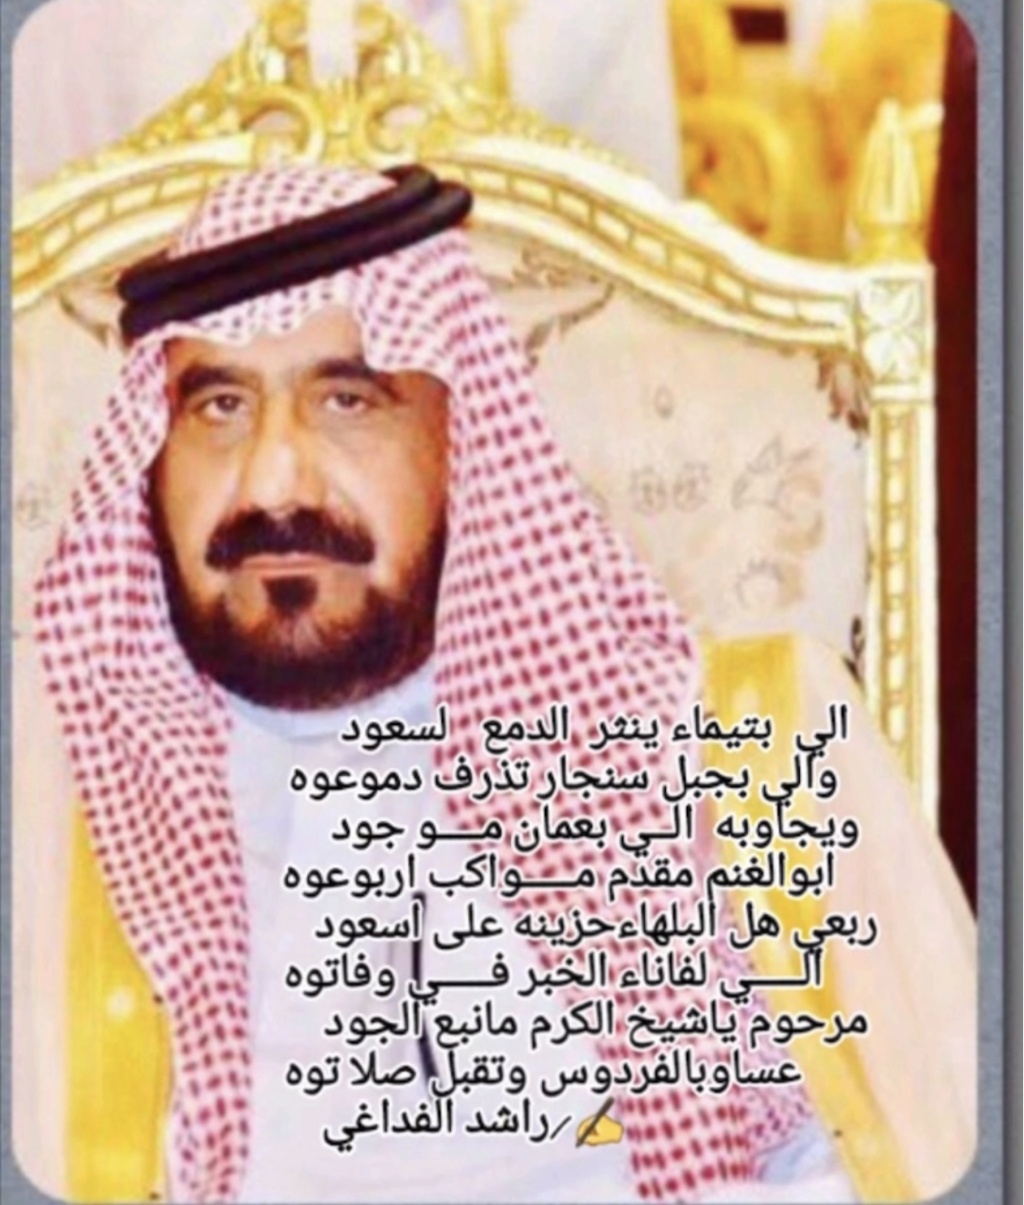 سعود عبدالعزيز الدوخي الفداغي الشمري في ذمة الله 2825bd10